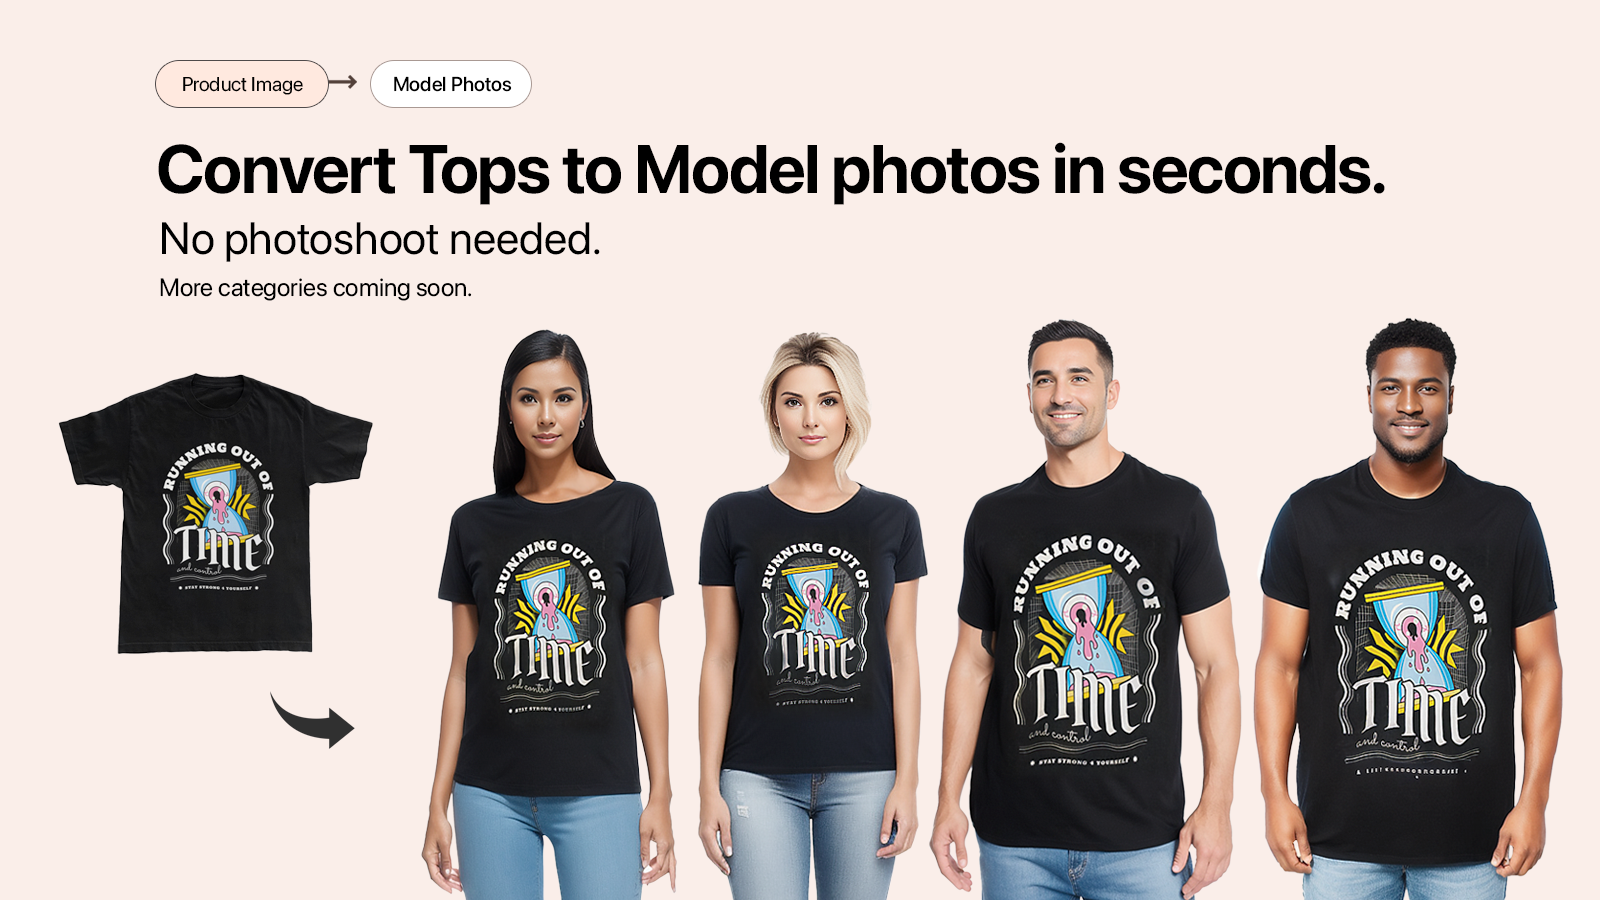 Konvertera t-shirt bilder till modellfoton automatiskt